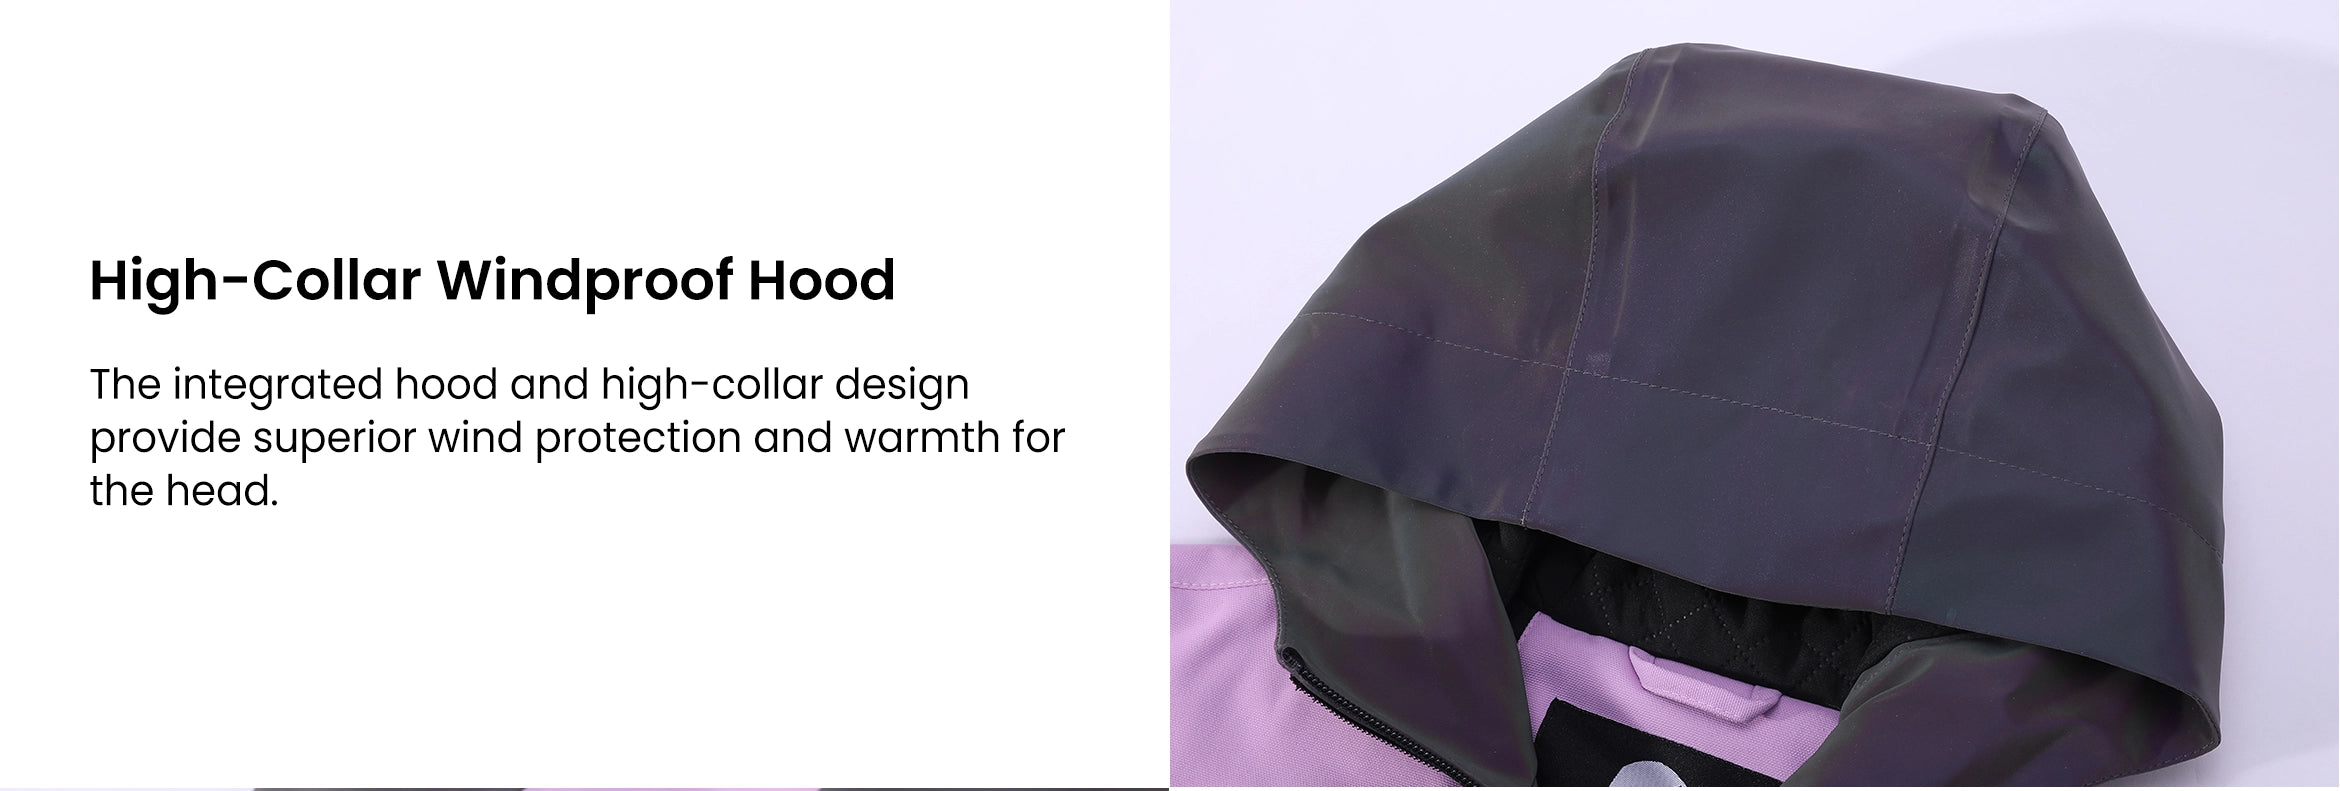 7. High-Collar Windproof Hood